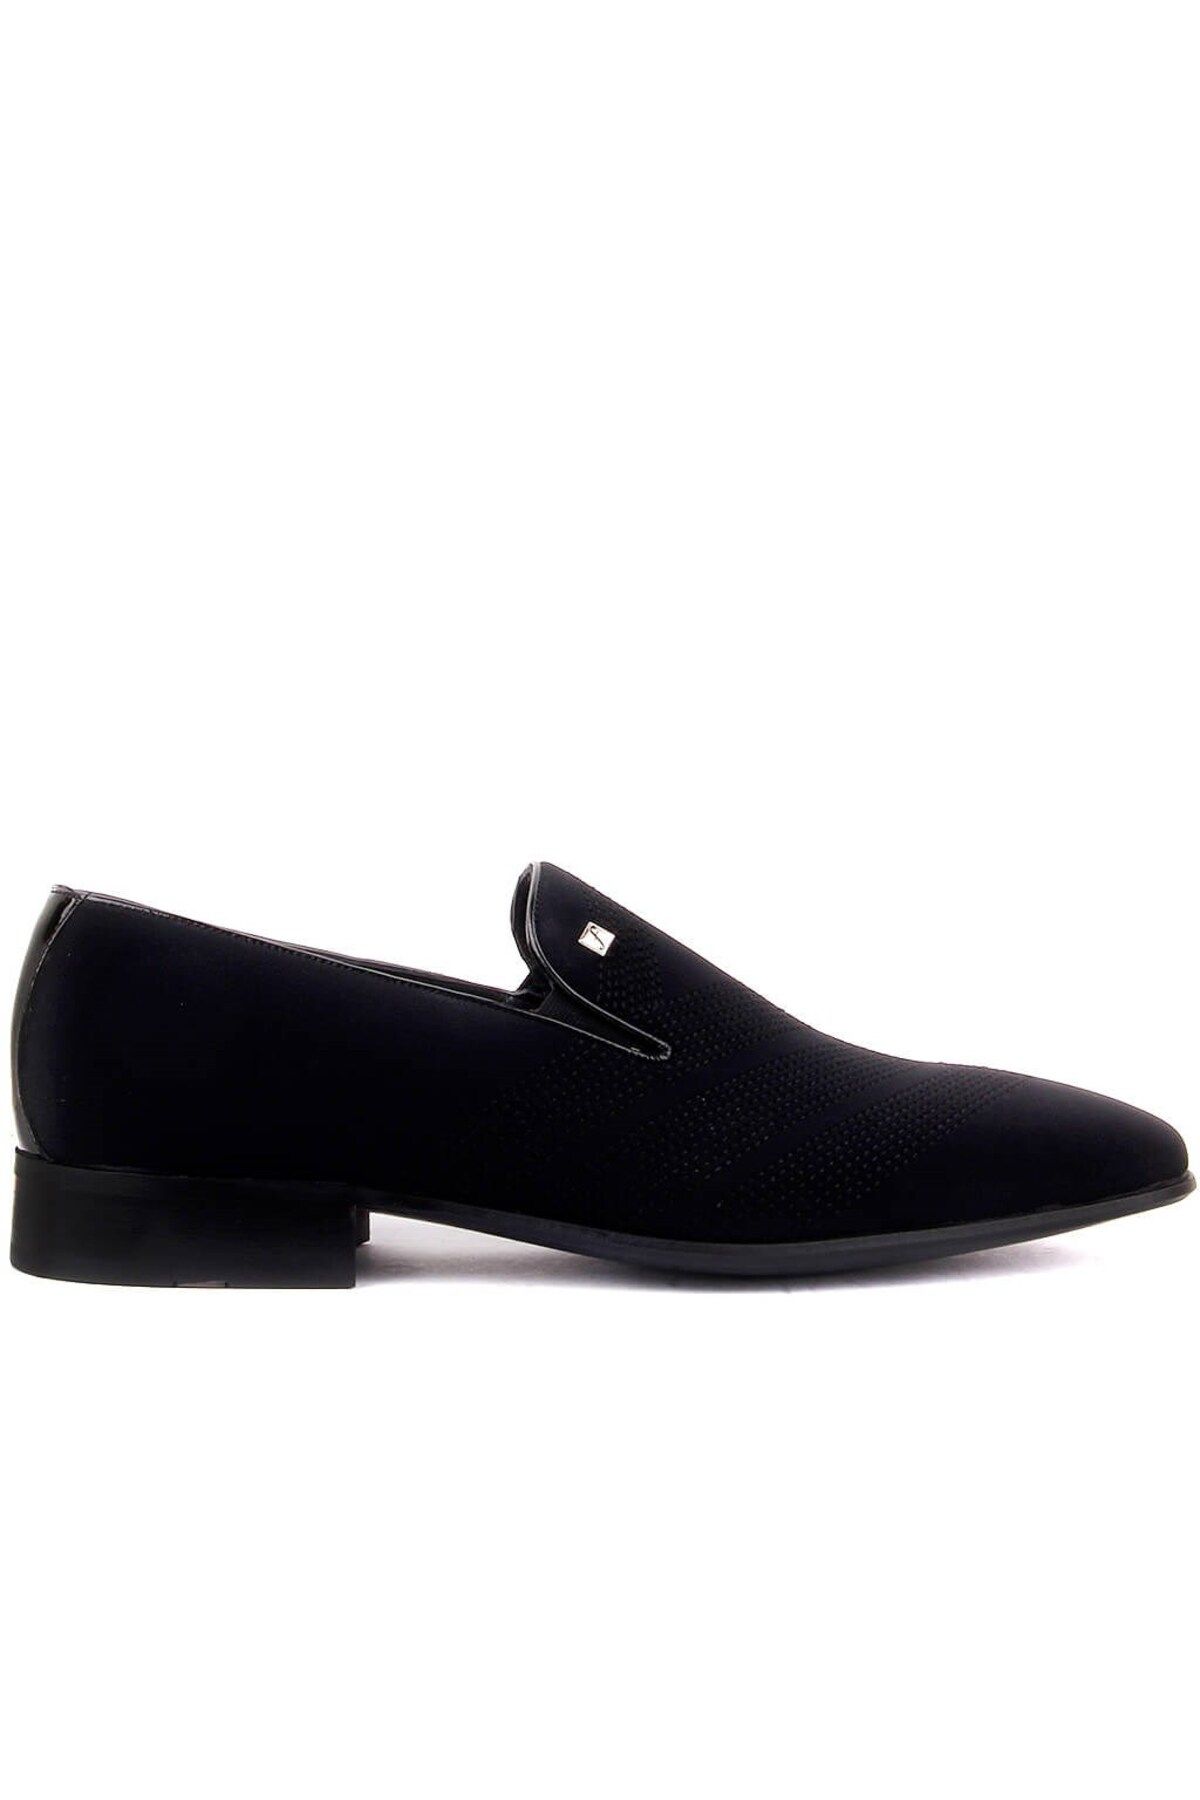 Sail Lakers Fosco - Siyah Renk Bağcıksız Erkek Klasik Ayakkabı